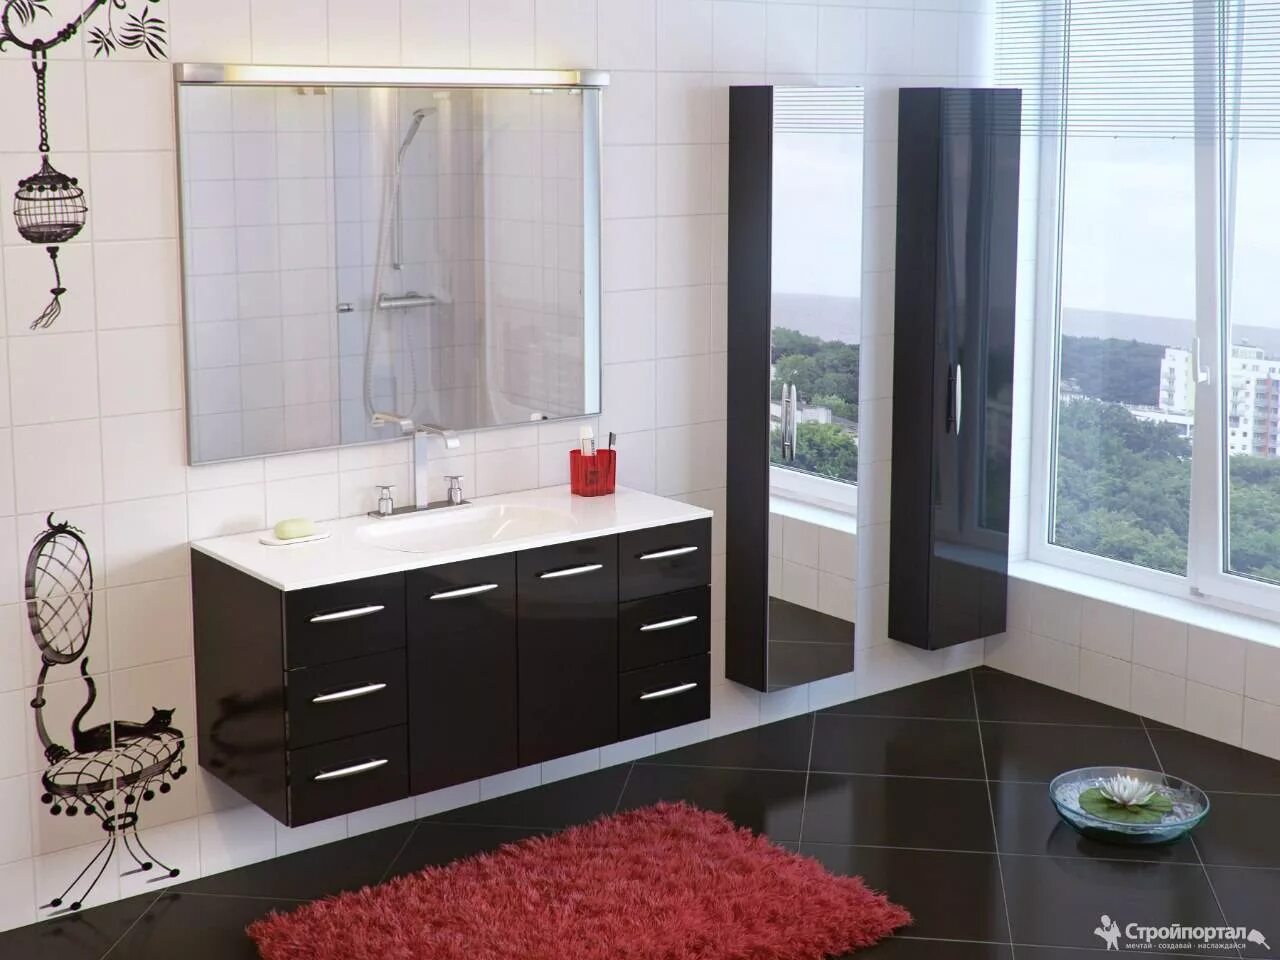 Мебель для ванной комнаты. Красивая мебель для ванной комнаты. Комплект мебели в ванную комнату. Стильная ванная мебель. Мебель для ванны новосибирск